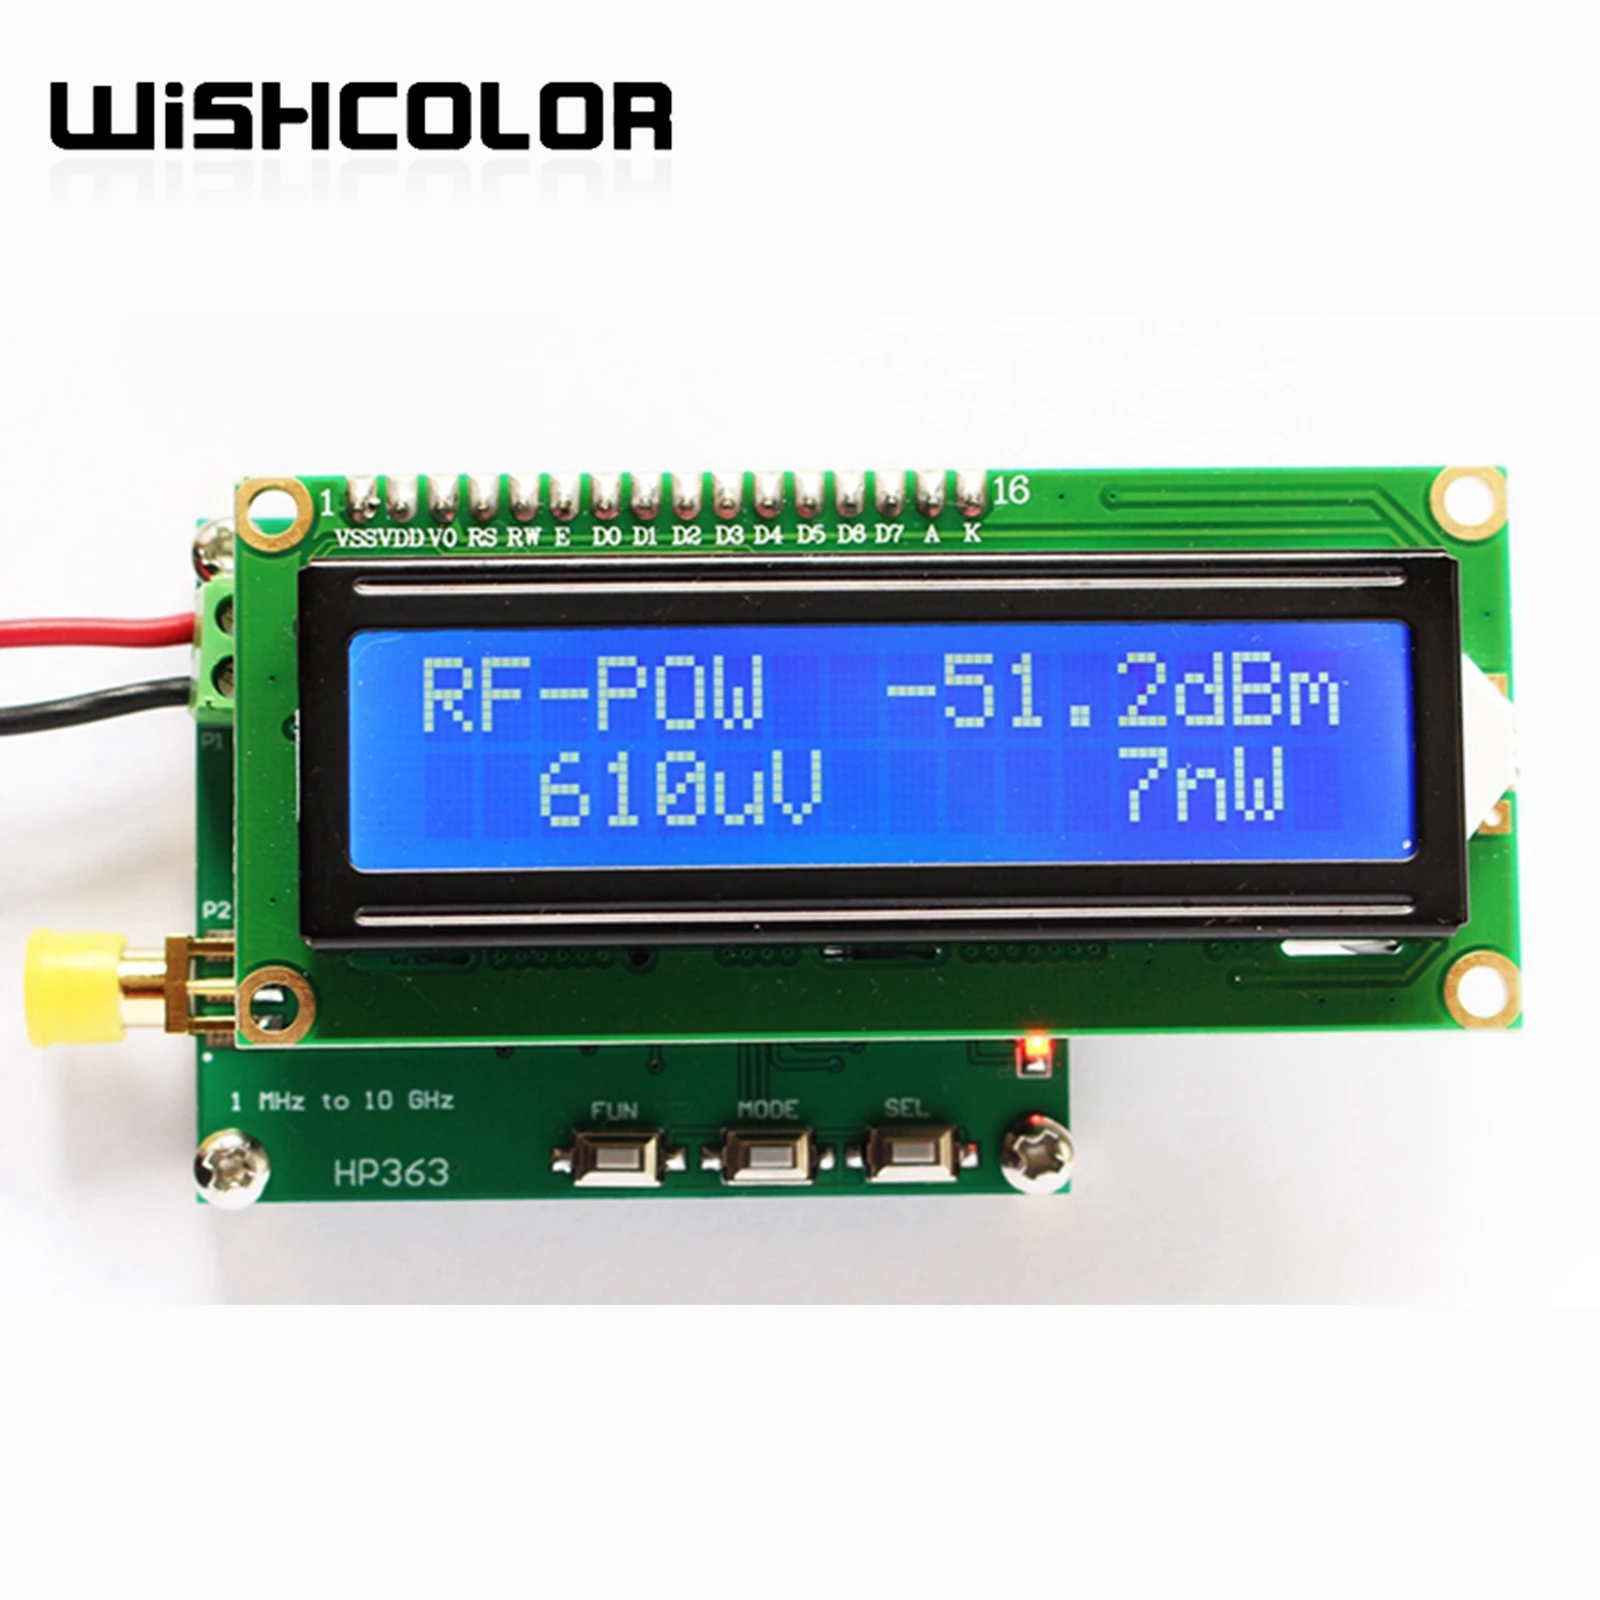 Wishcolor RF Teljesítmény Mérő -50, hogy 0dBm 1MHz~10GHz Teljesítmény Analizátor Teszter Állítható Csillapítás Érték Frekvencia Rádiós Eszköz